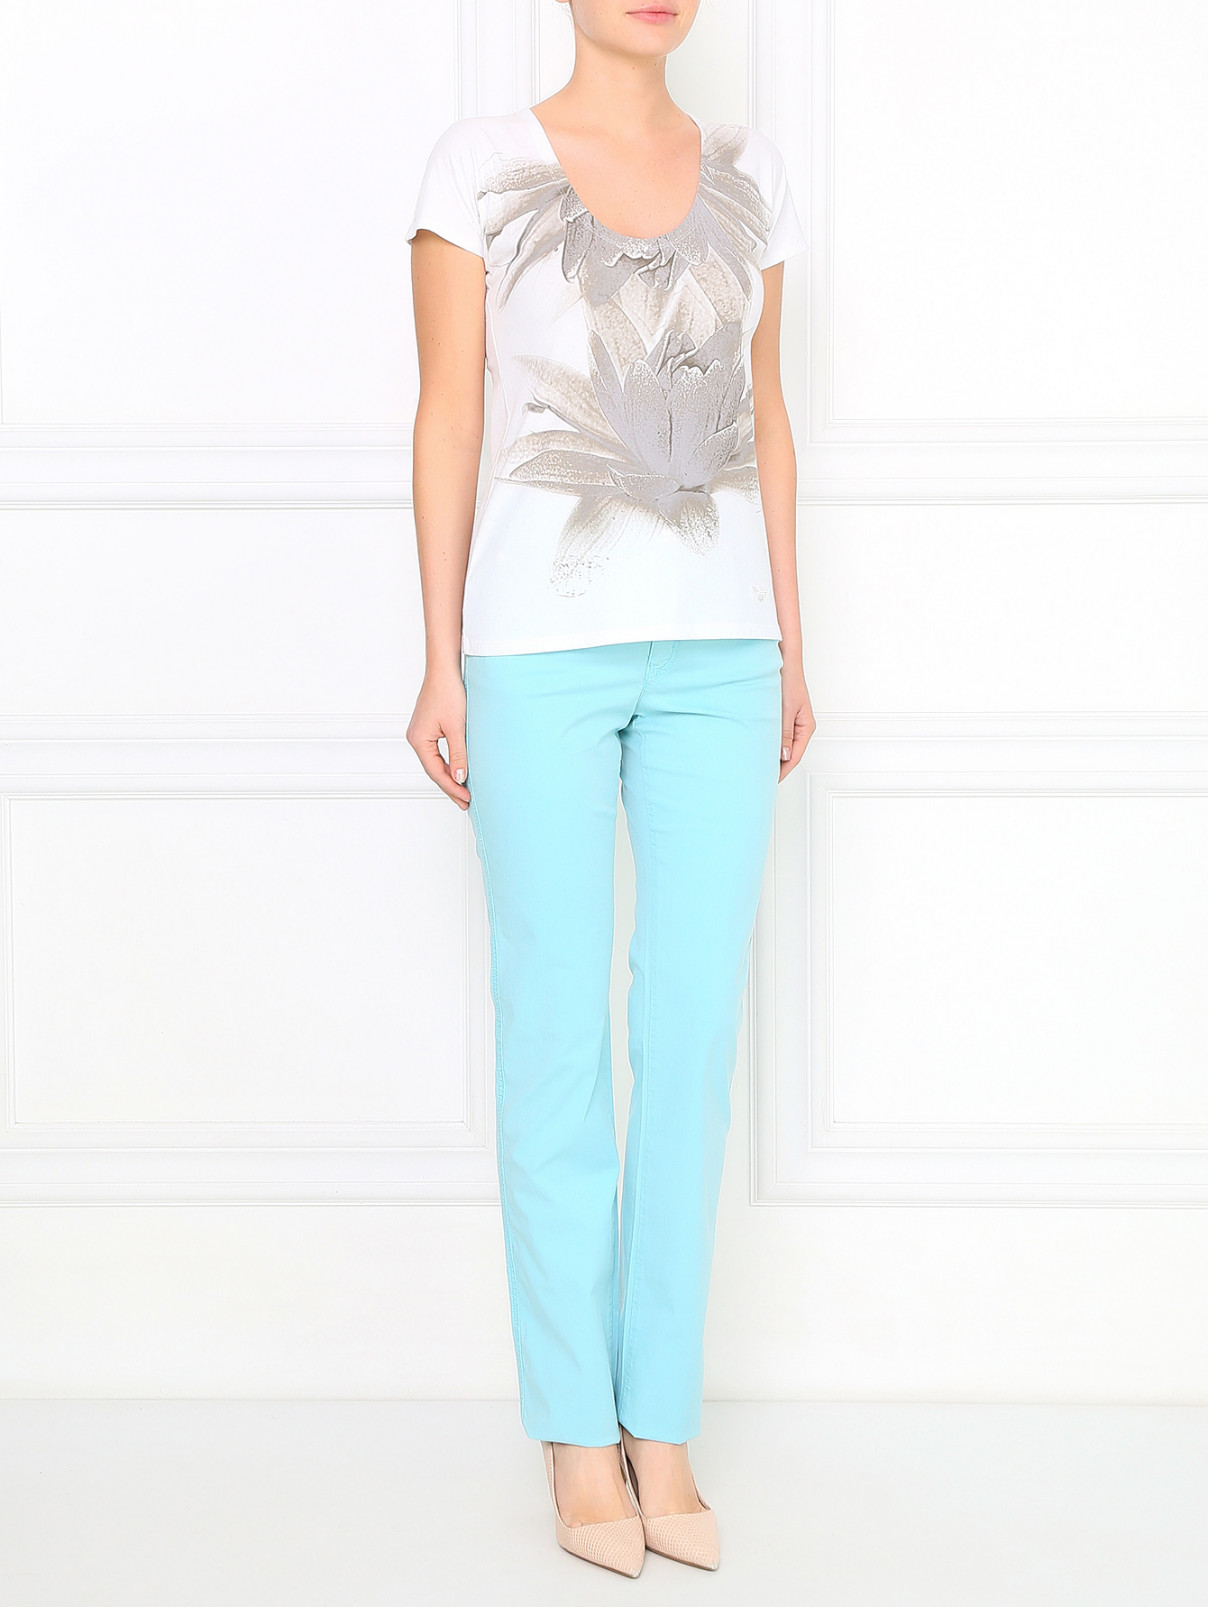 Прямые брюки из хлопка Armani Collezioni  –  Модель Общий вид  – Цвет:  Синий